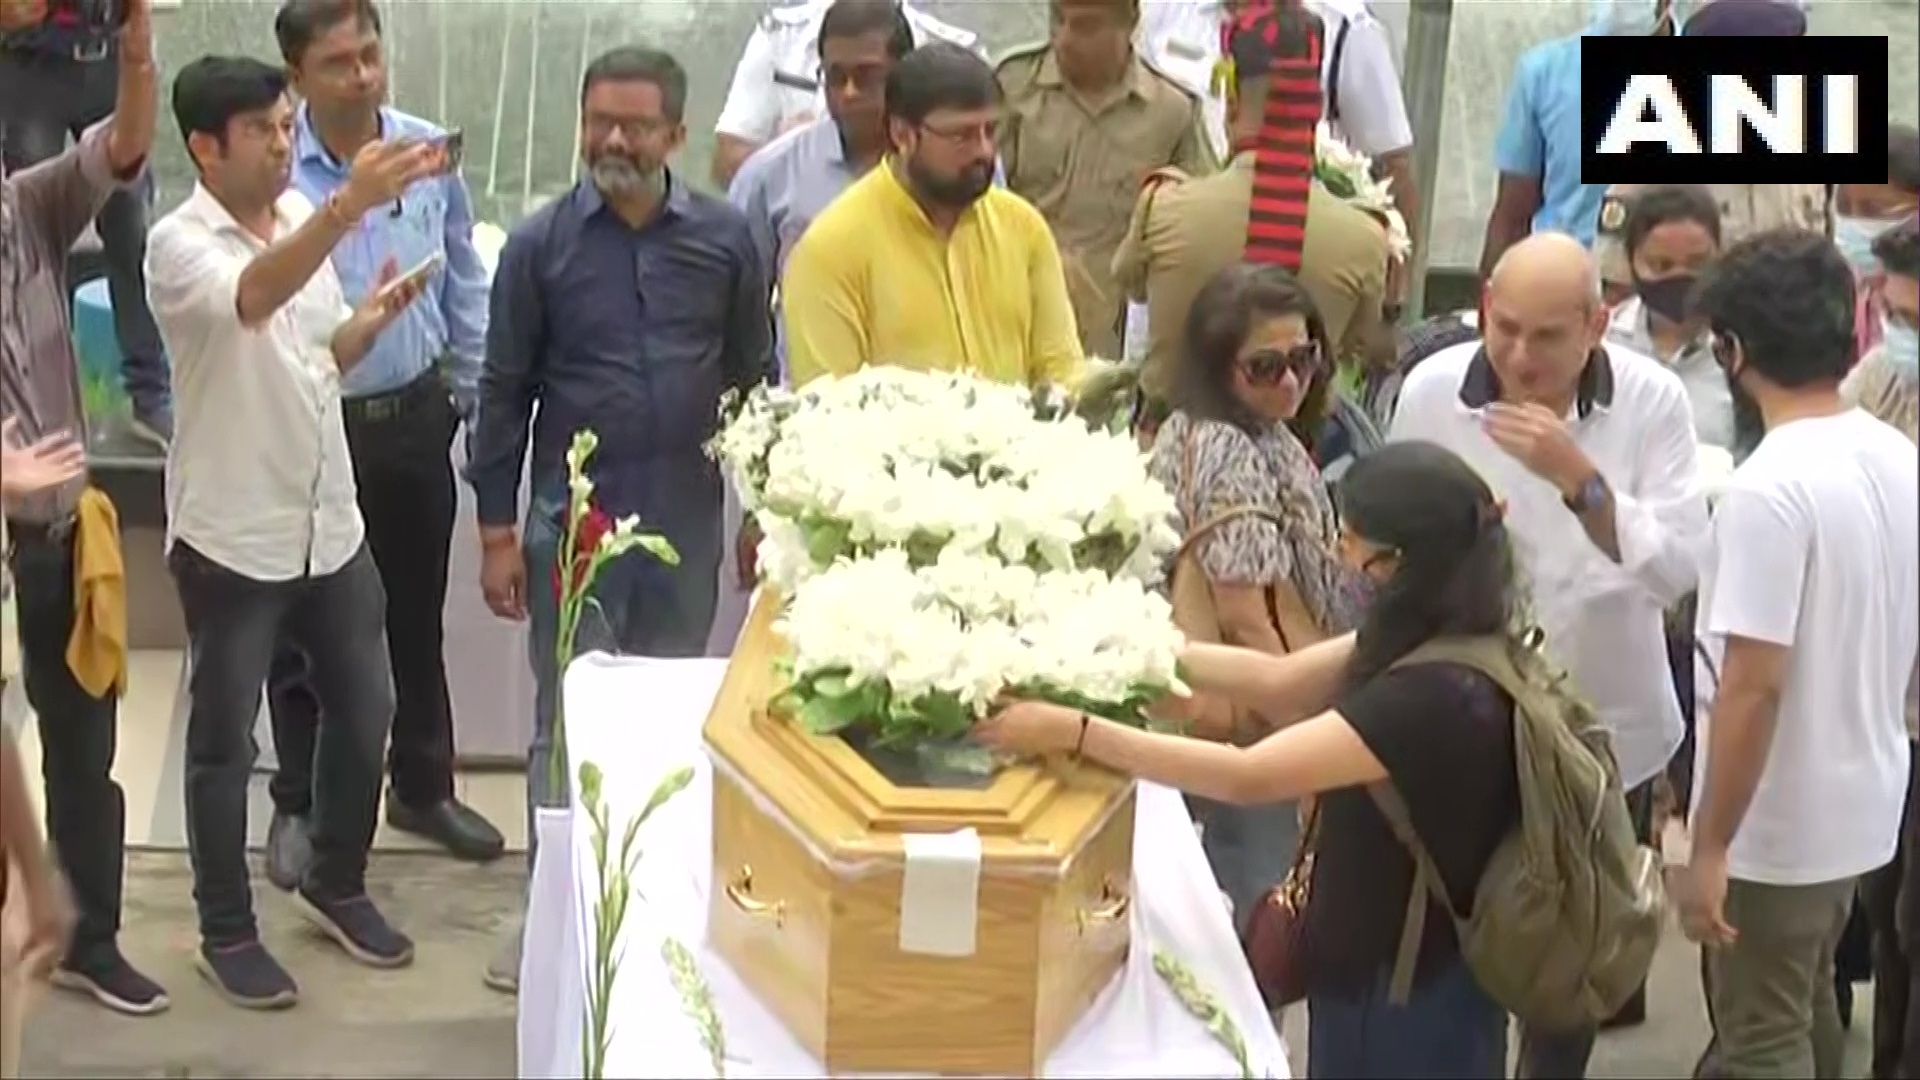  تشيع جثمان كريشناكومار كوناث في كالكوتا بالهند